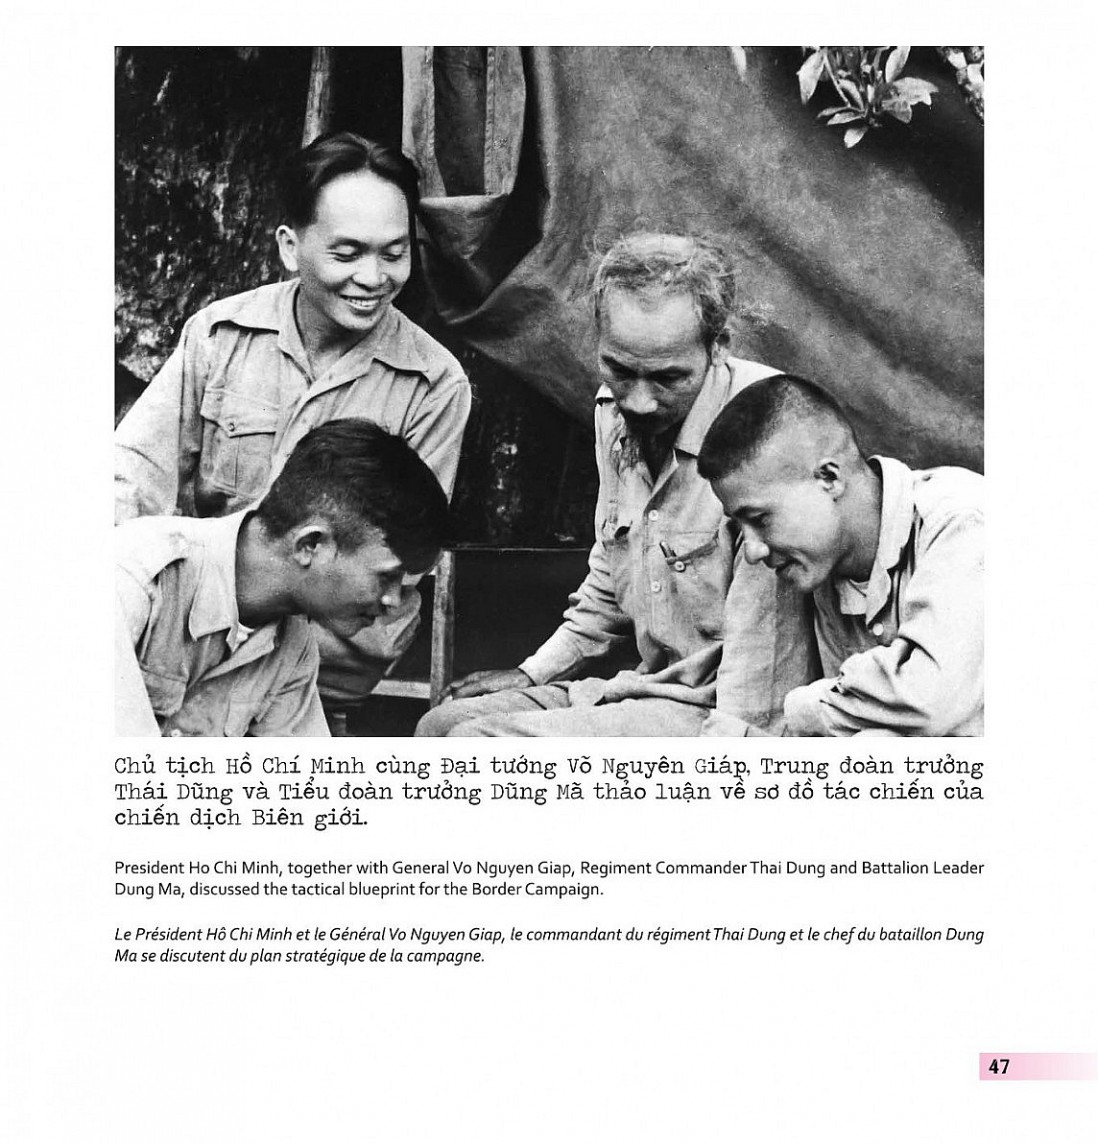 Ra mắt sách ảnh “Điện Biên Phủ - Những khoảnh khắc từ lịch sử” bằng 3 thứ tiếng